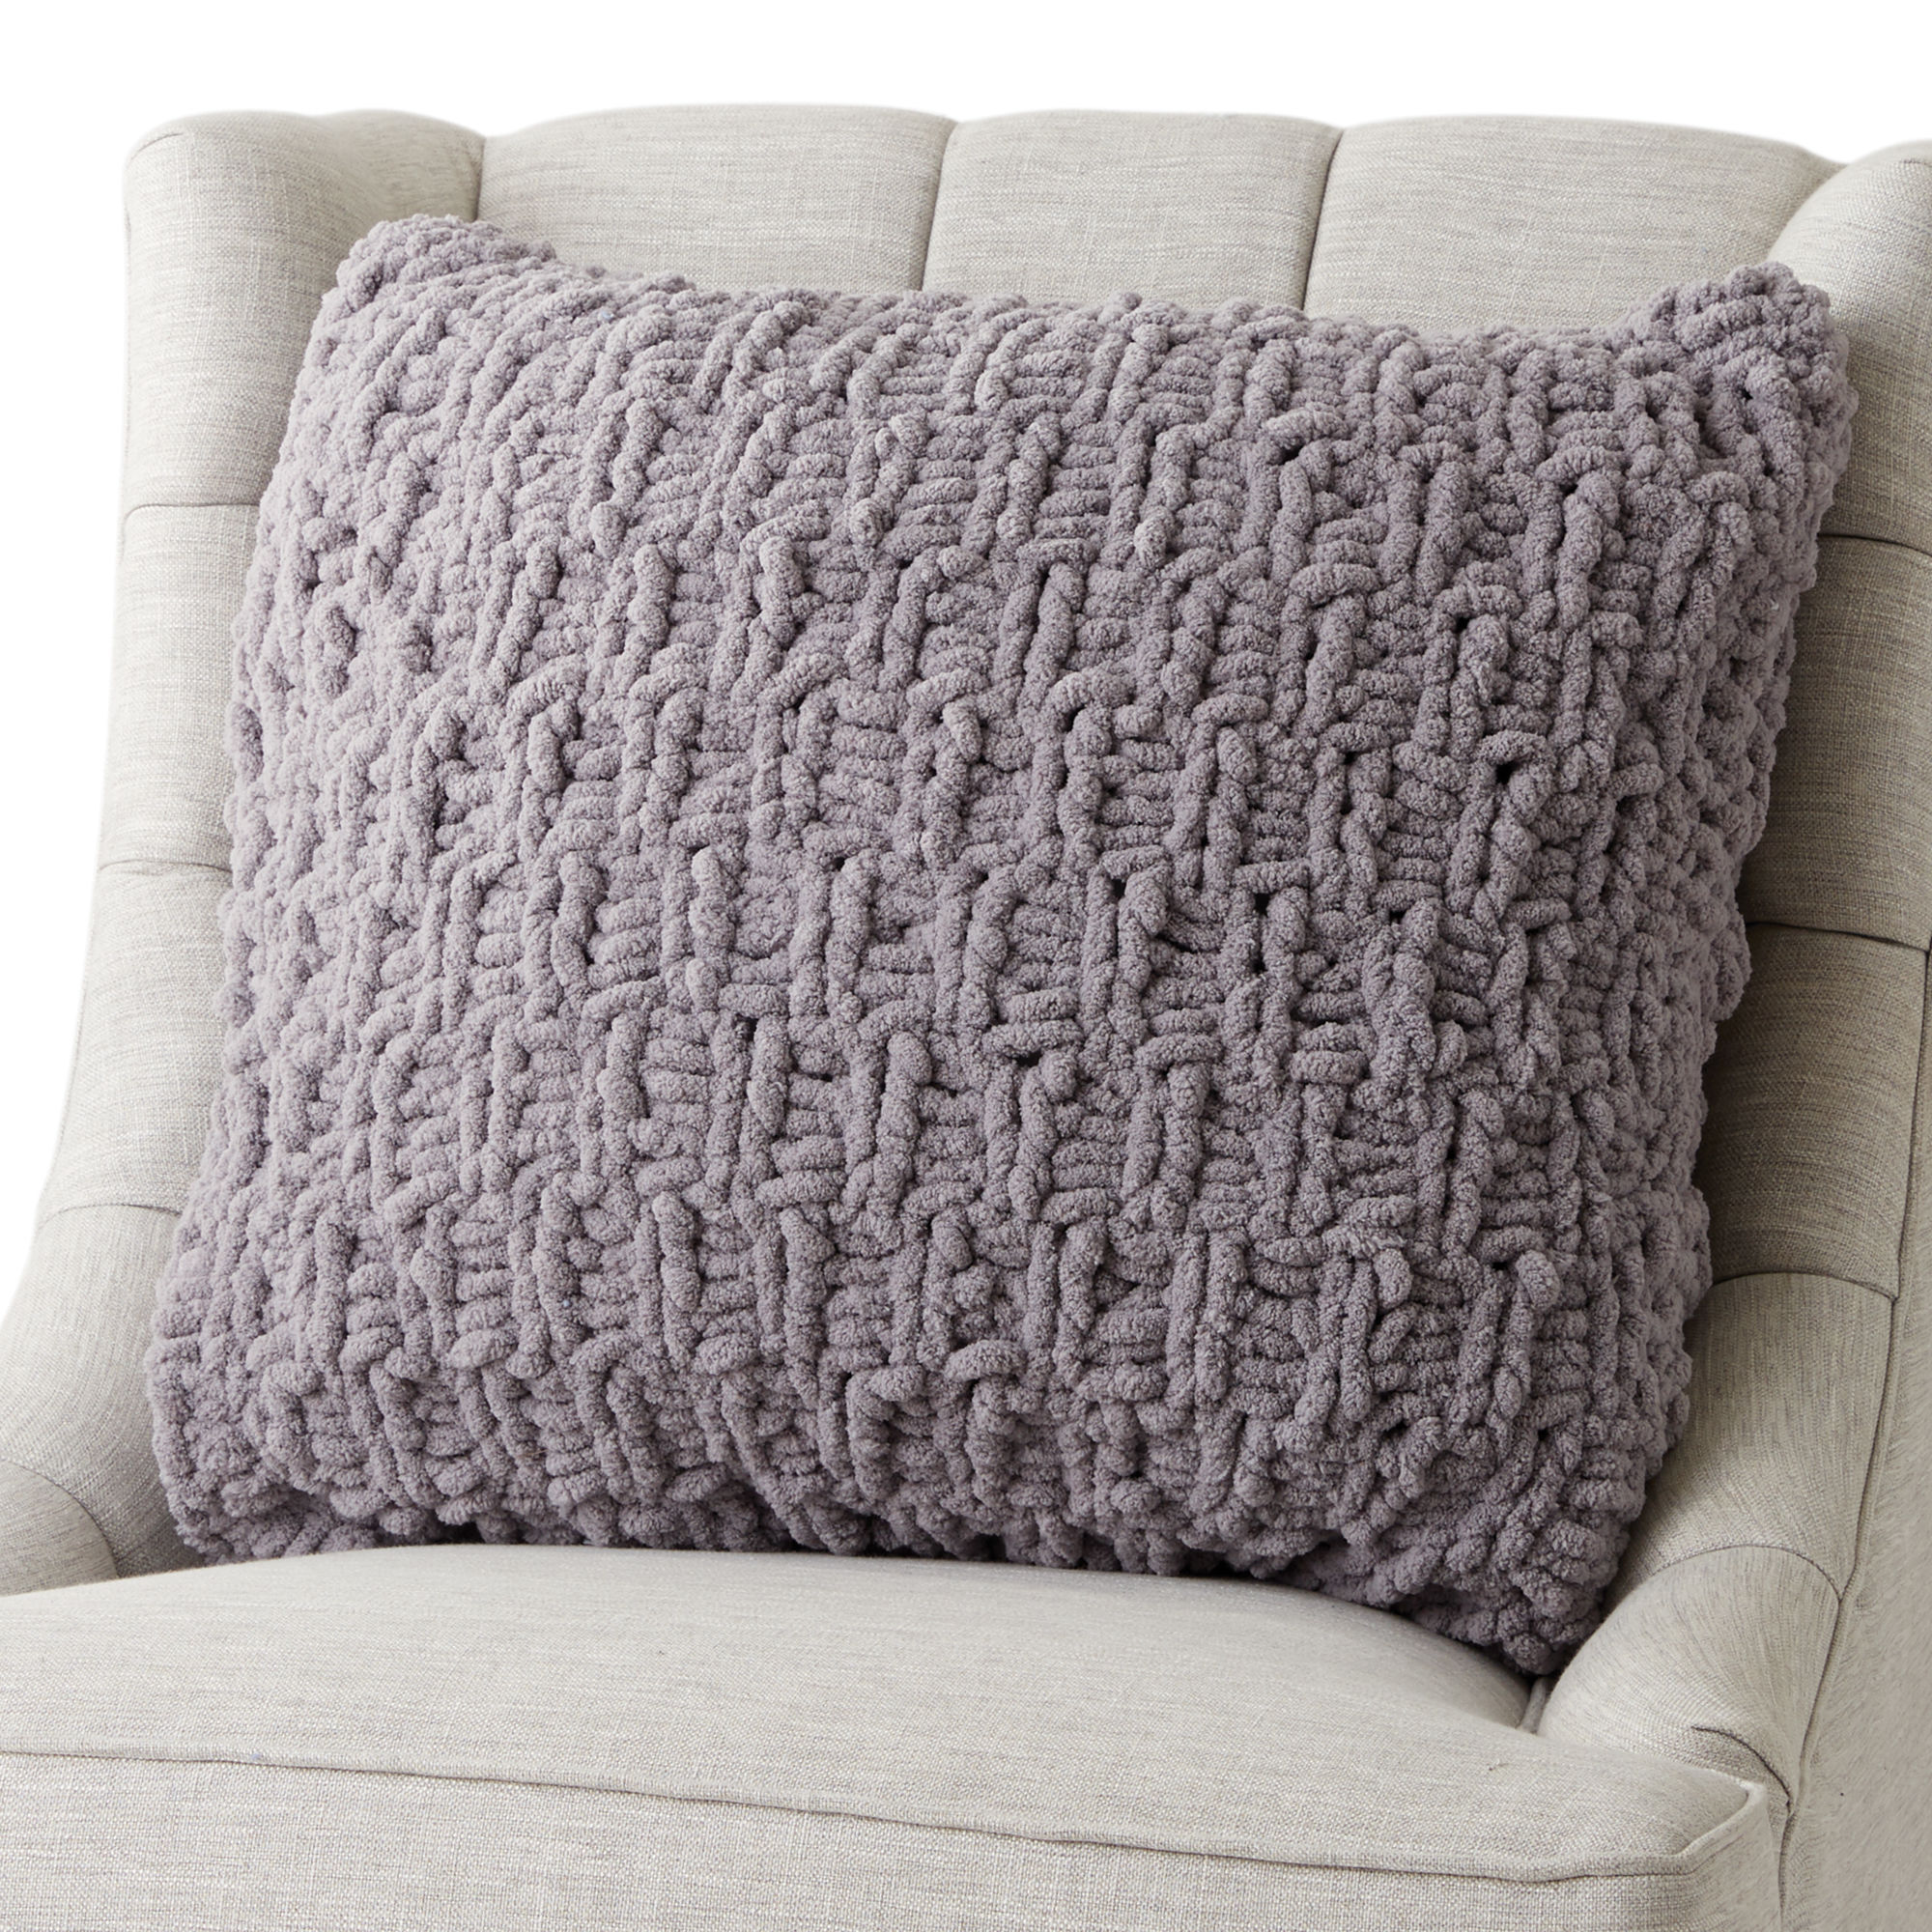 Knitting Patterns Galore - Bernat Rambling Knit Cushion